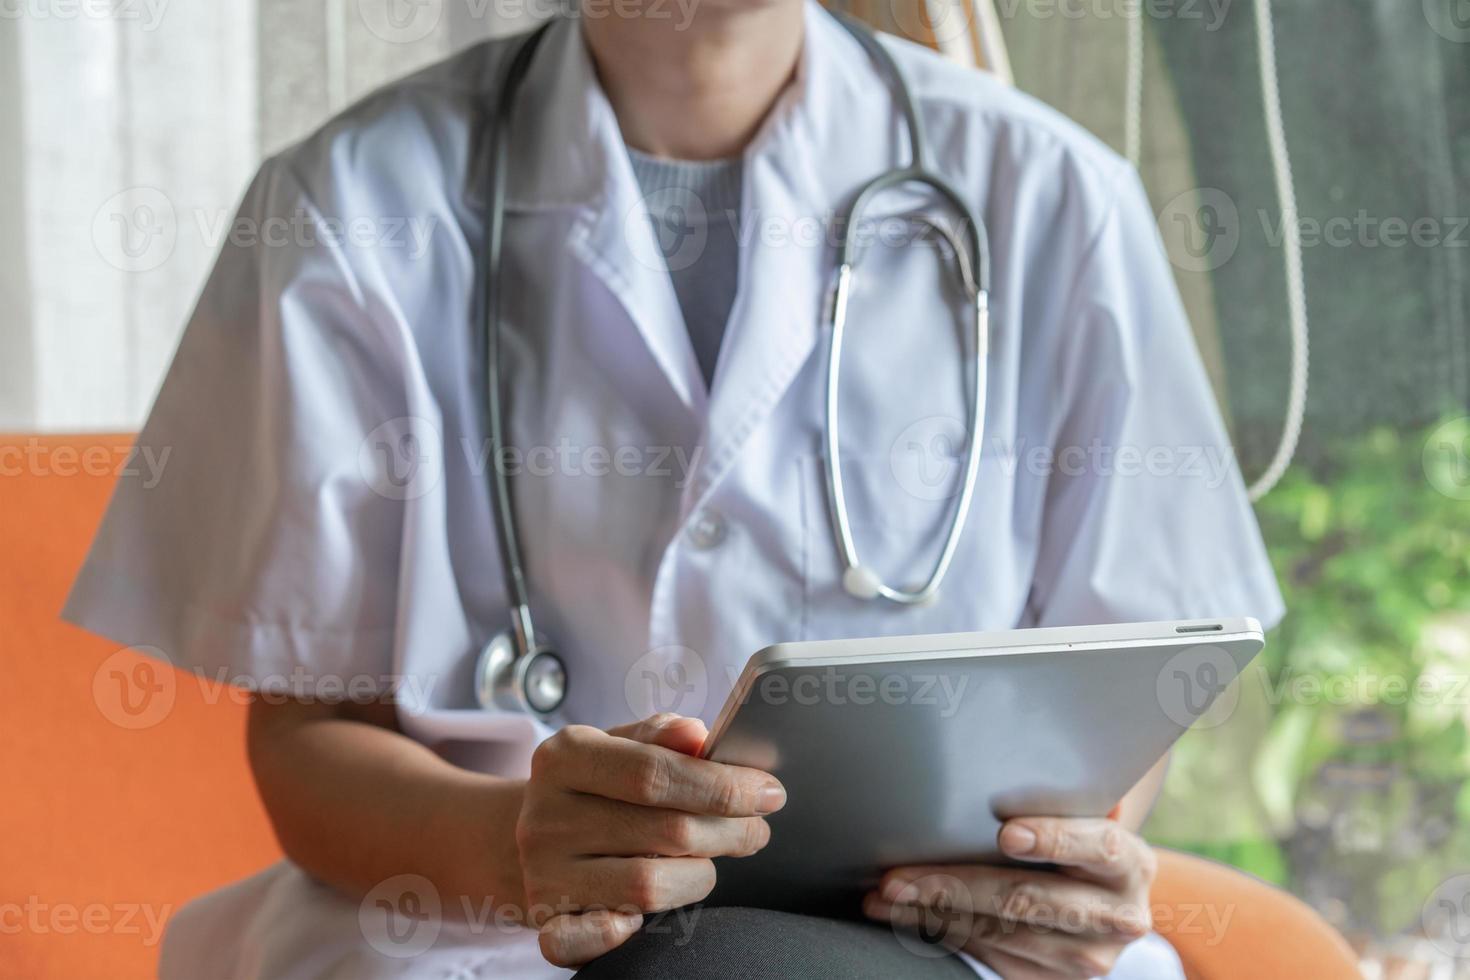 arts met tablet in telemedisch concept foto